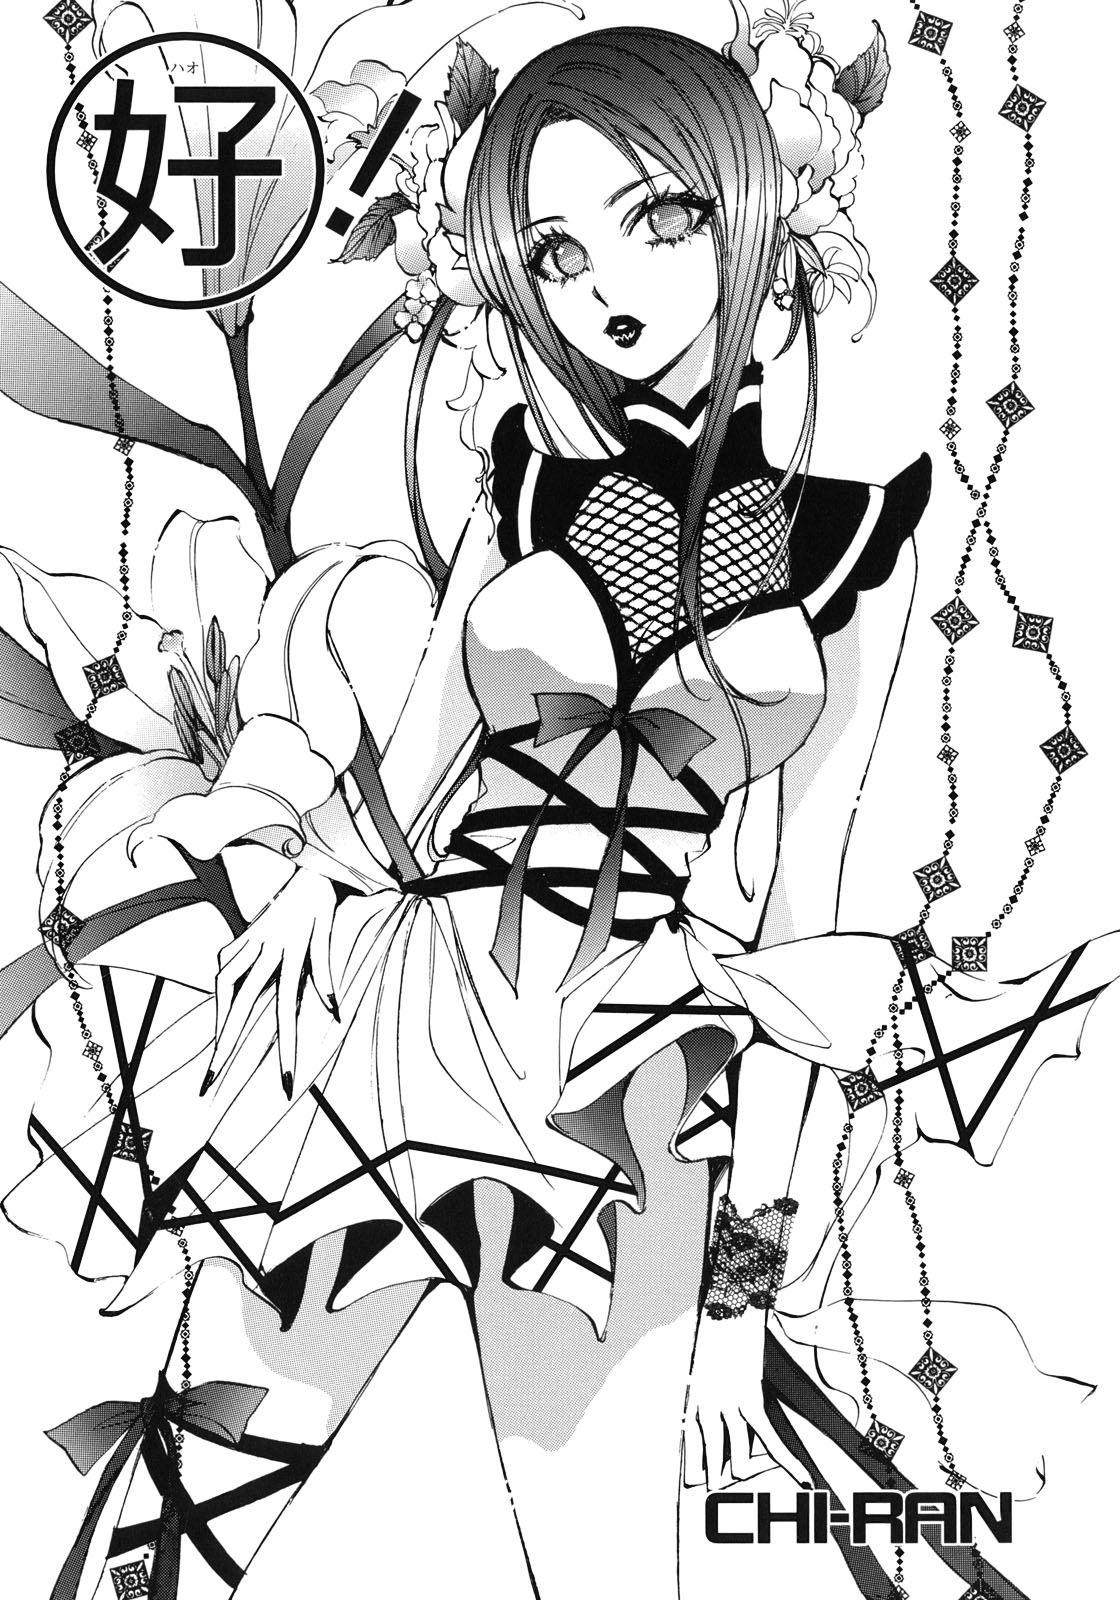 [アンソロジー] 百合姫 Wildrose ユリヒメワイルドローズ Vol.1